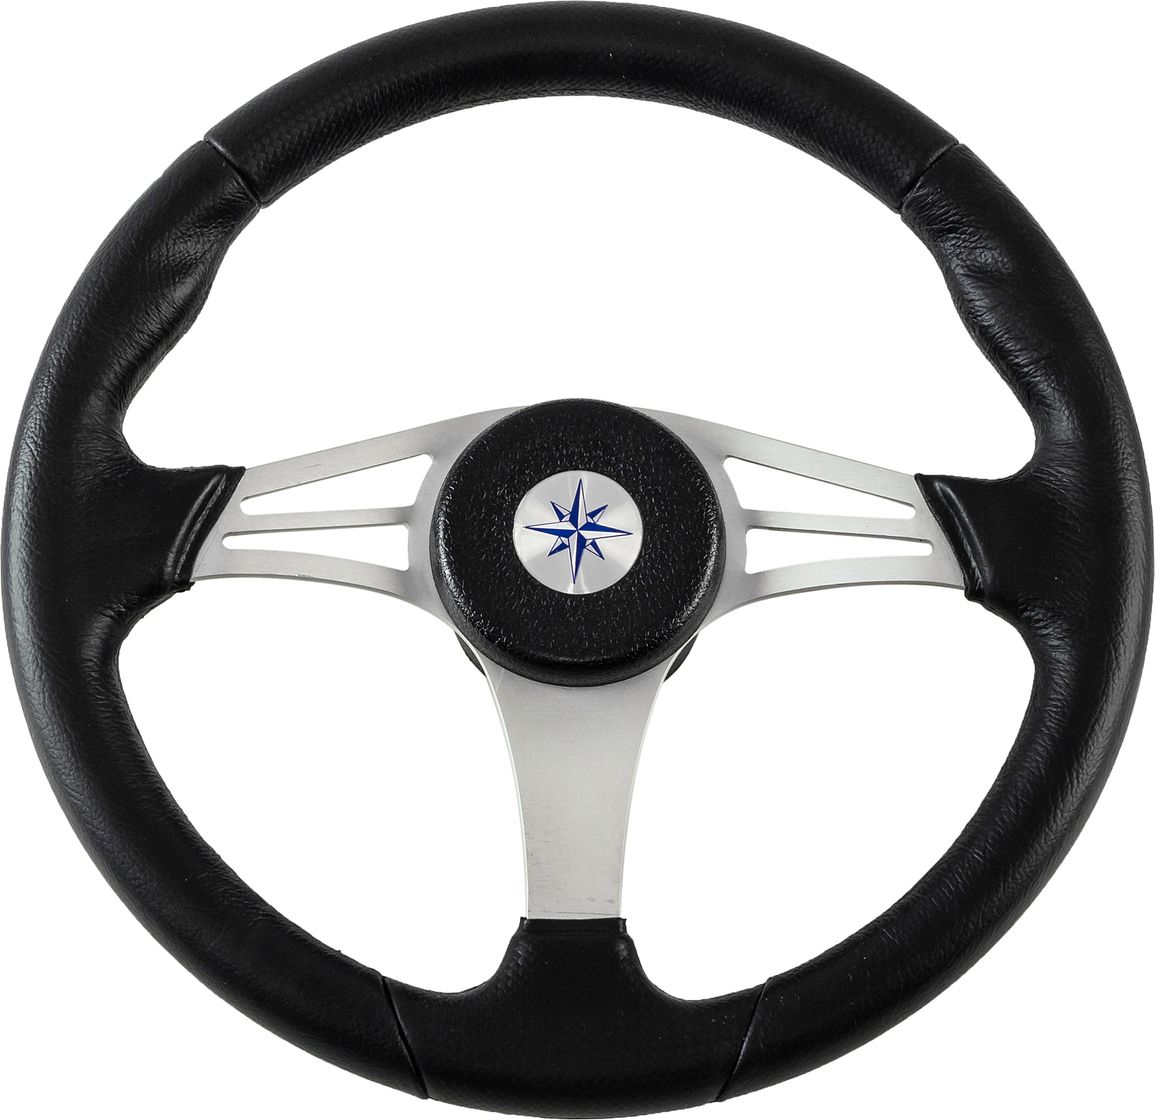 Рулевое колесо ENDURANCE обод черный, спицы серебряные д. 350 мм VN13511-01 рулевое колесо riviera белый обод и спицы д 350 мм vn8001 08